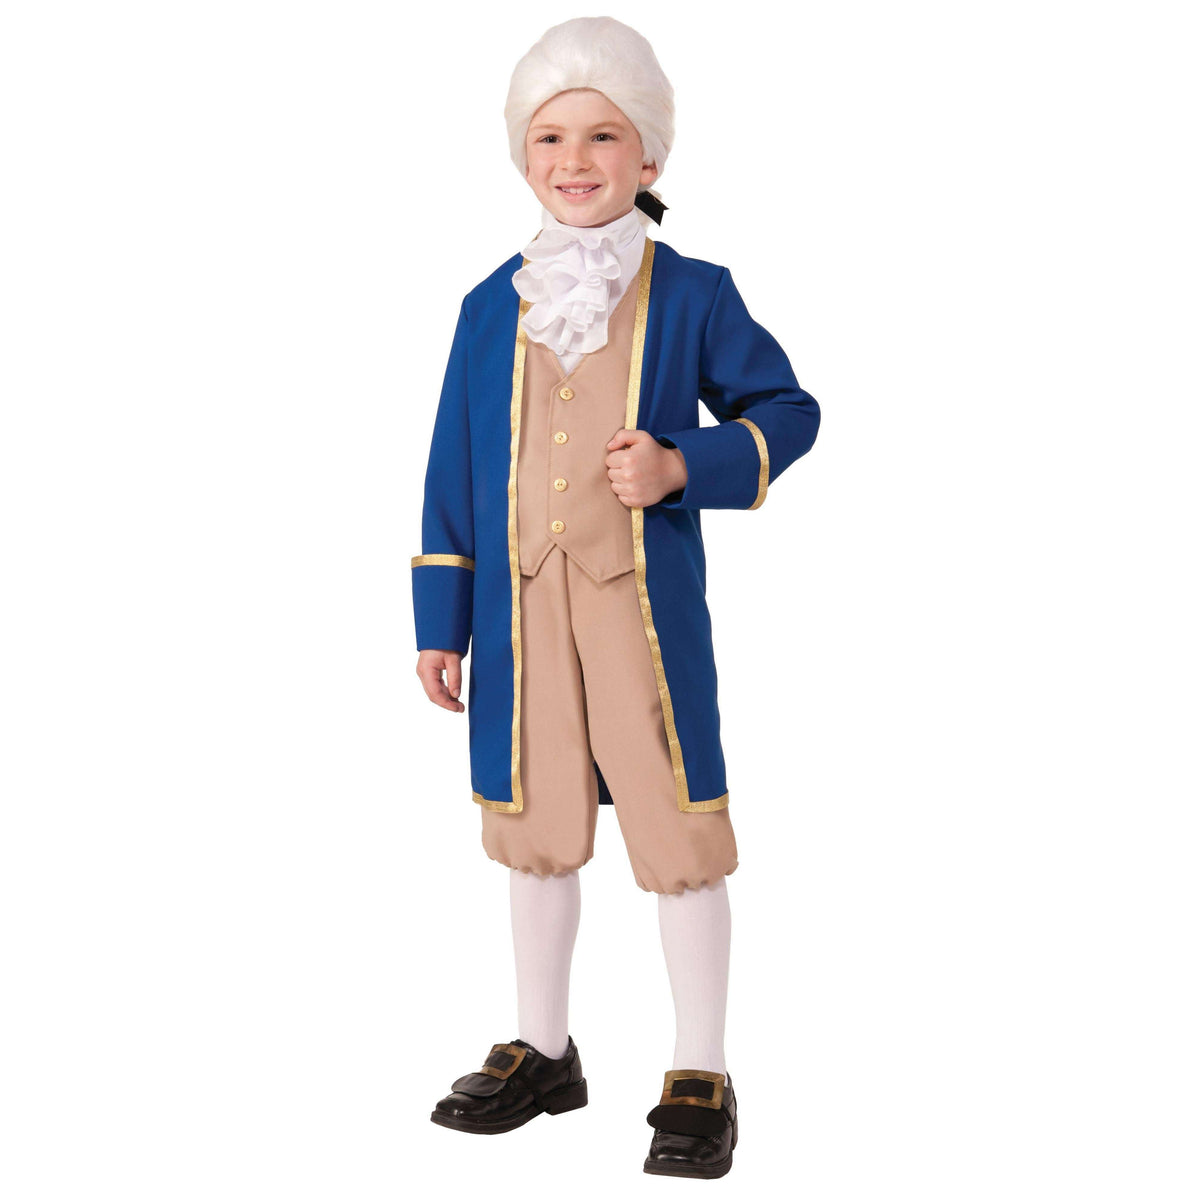 George Washington Child Costume